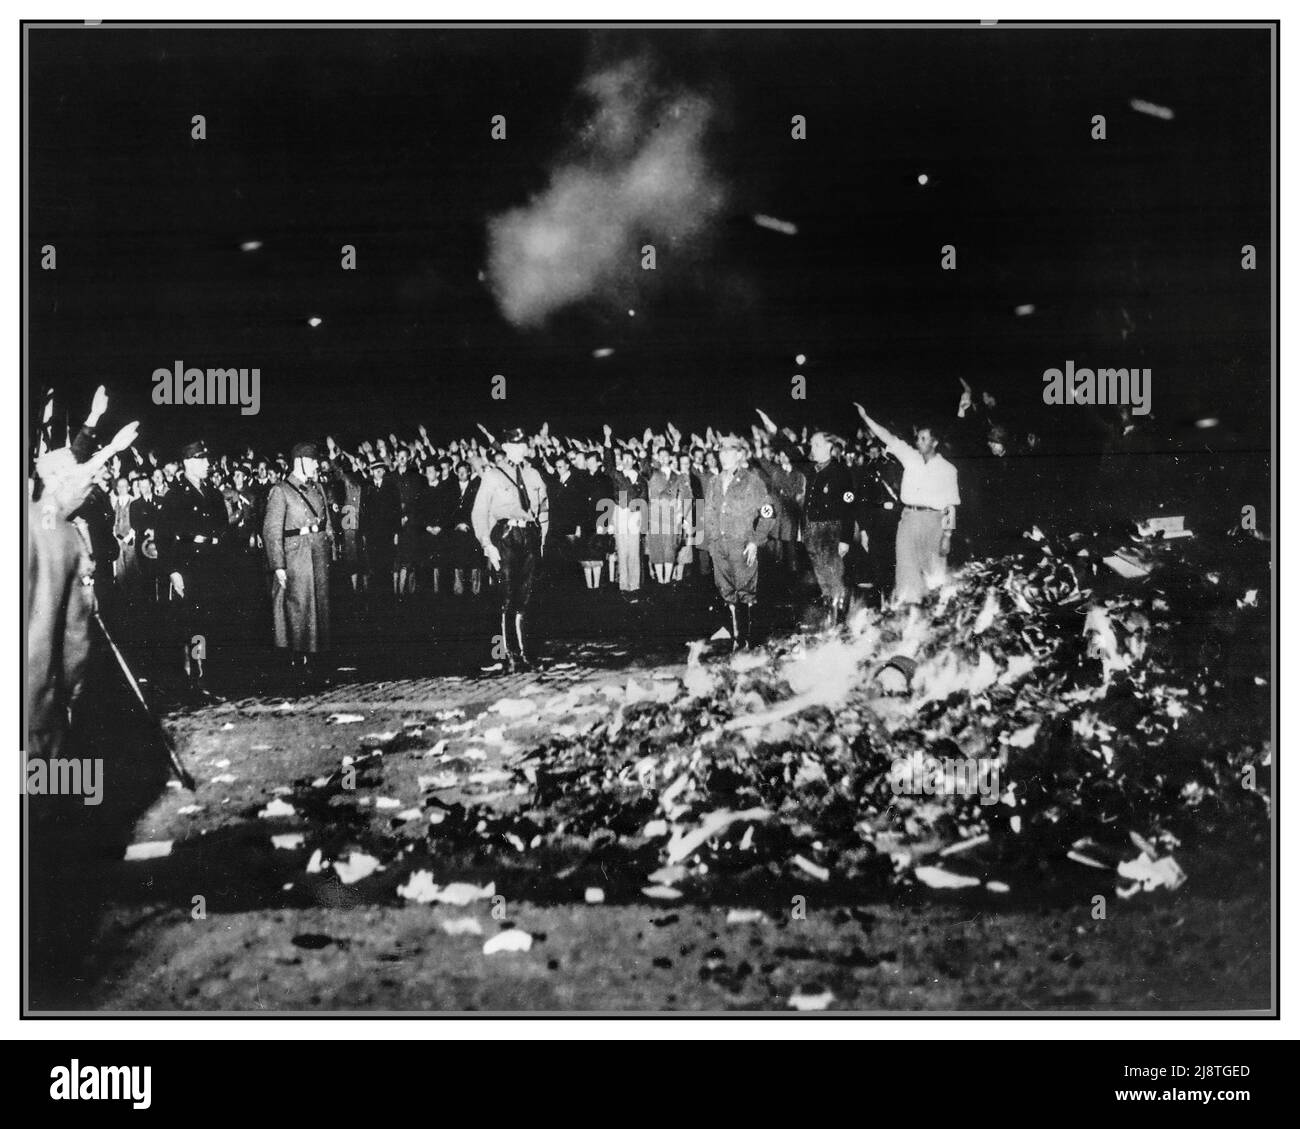 CENSURE DES LIVRES NAZIS 1933 des milliers de livres ont brûlé dans un énorme feu de joie tandis que les Allemands saluent les Nazis lors de la vague des annonces de livres qui se sont répandues dans toute l'Allemagne nazie de 1930s dans la combustion des livres--Allemagne--1930 -1940 Nazis--Allemagne--1930 -1940 Seconde Guerre mondiale--États-Unis-1940 posters de guerre mondiale--1950 Banque D'Images